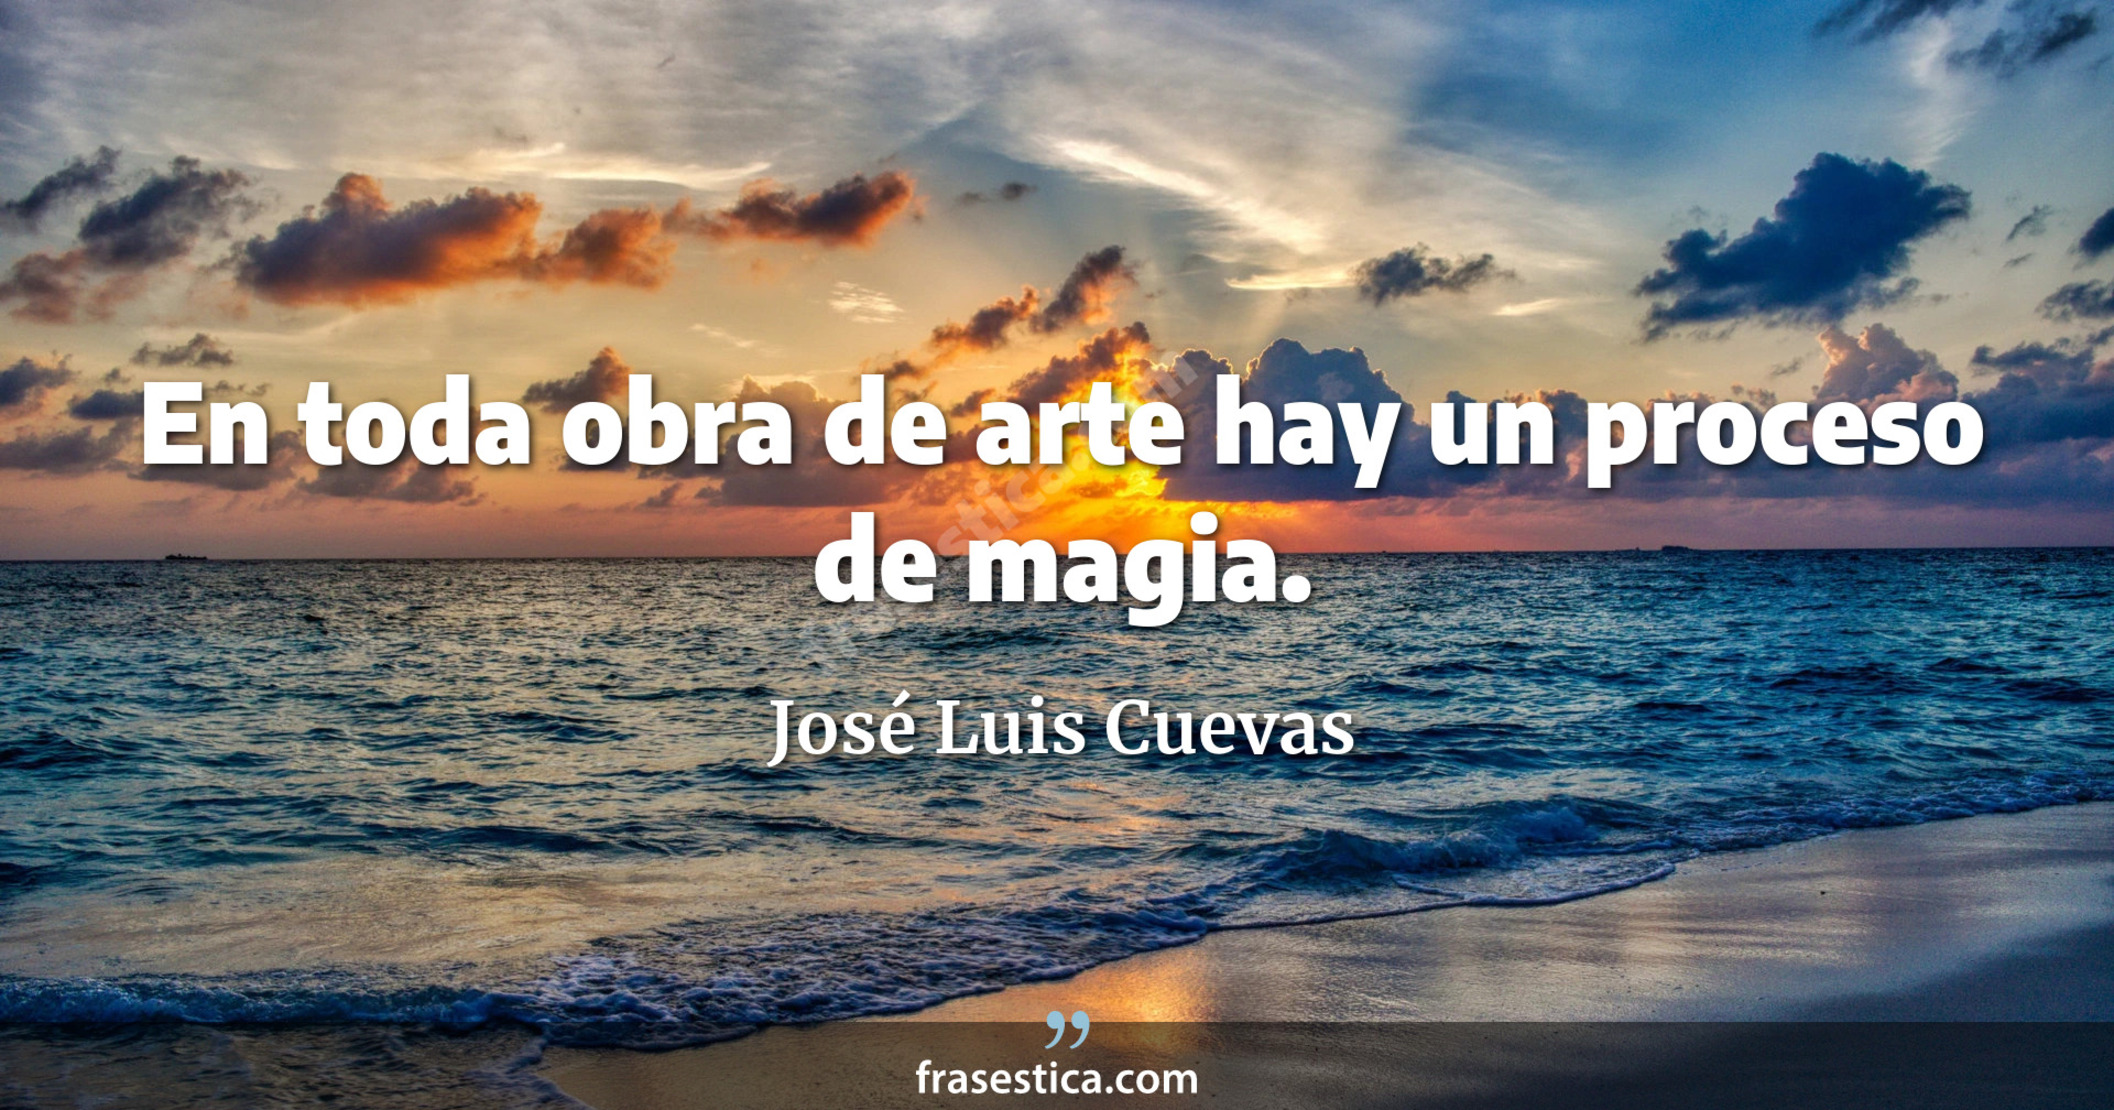 En toda obra de arte hay un proceso de magia. - José Luis Cuevas